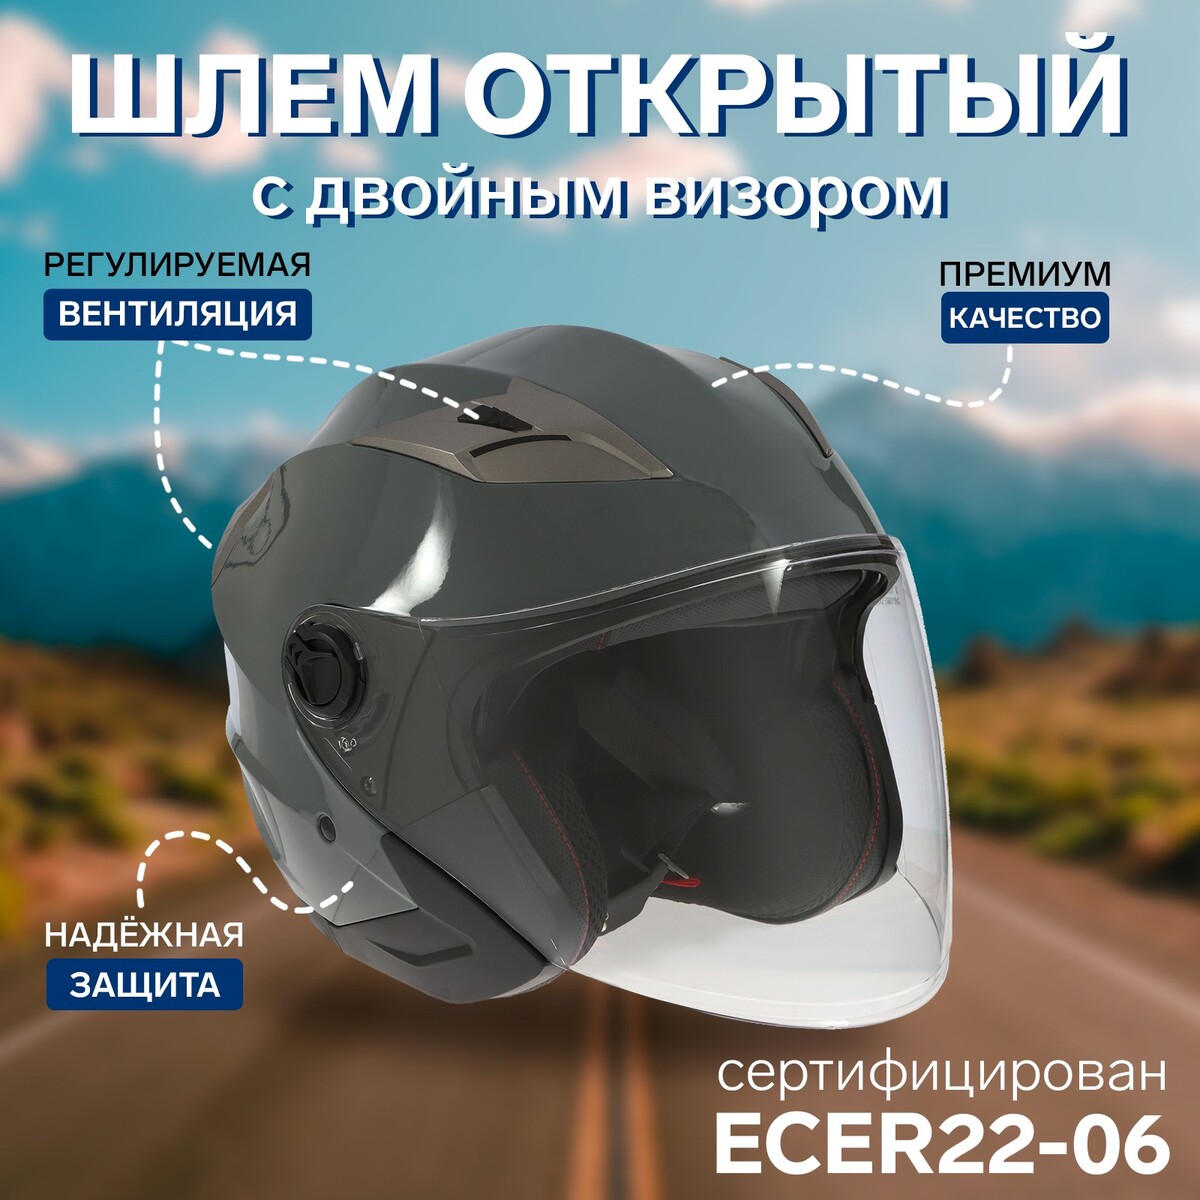 Шлем открытый с двумя визорами, размер l (59-60), модель - bld-708e, серый глянцевый